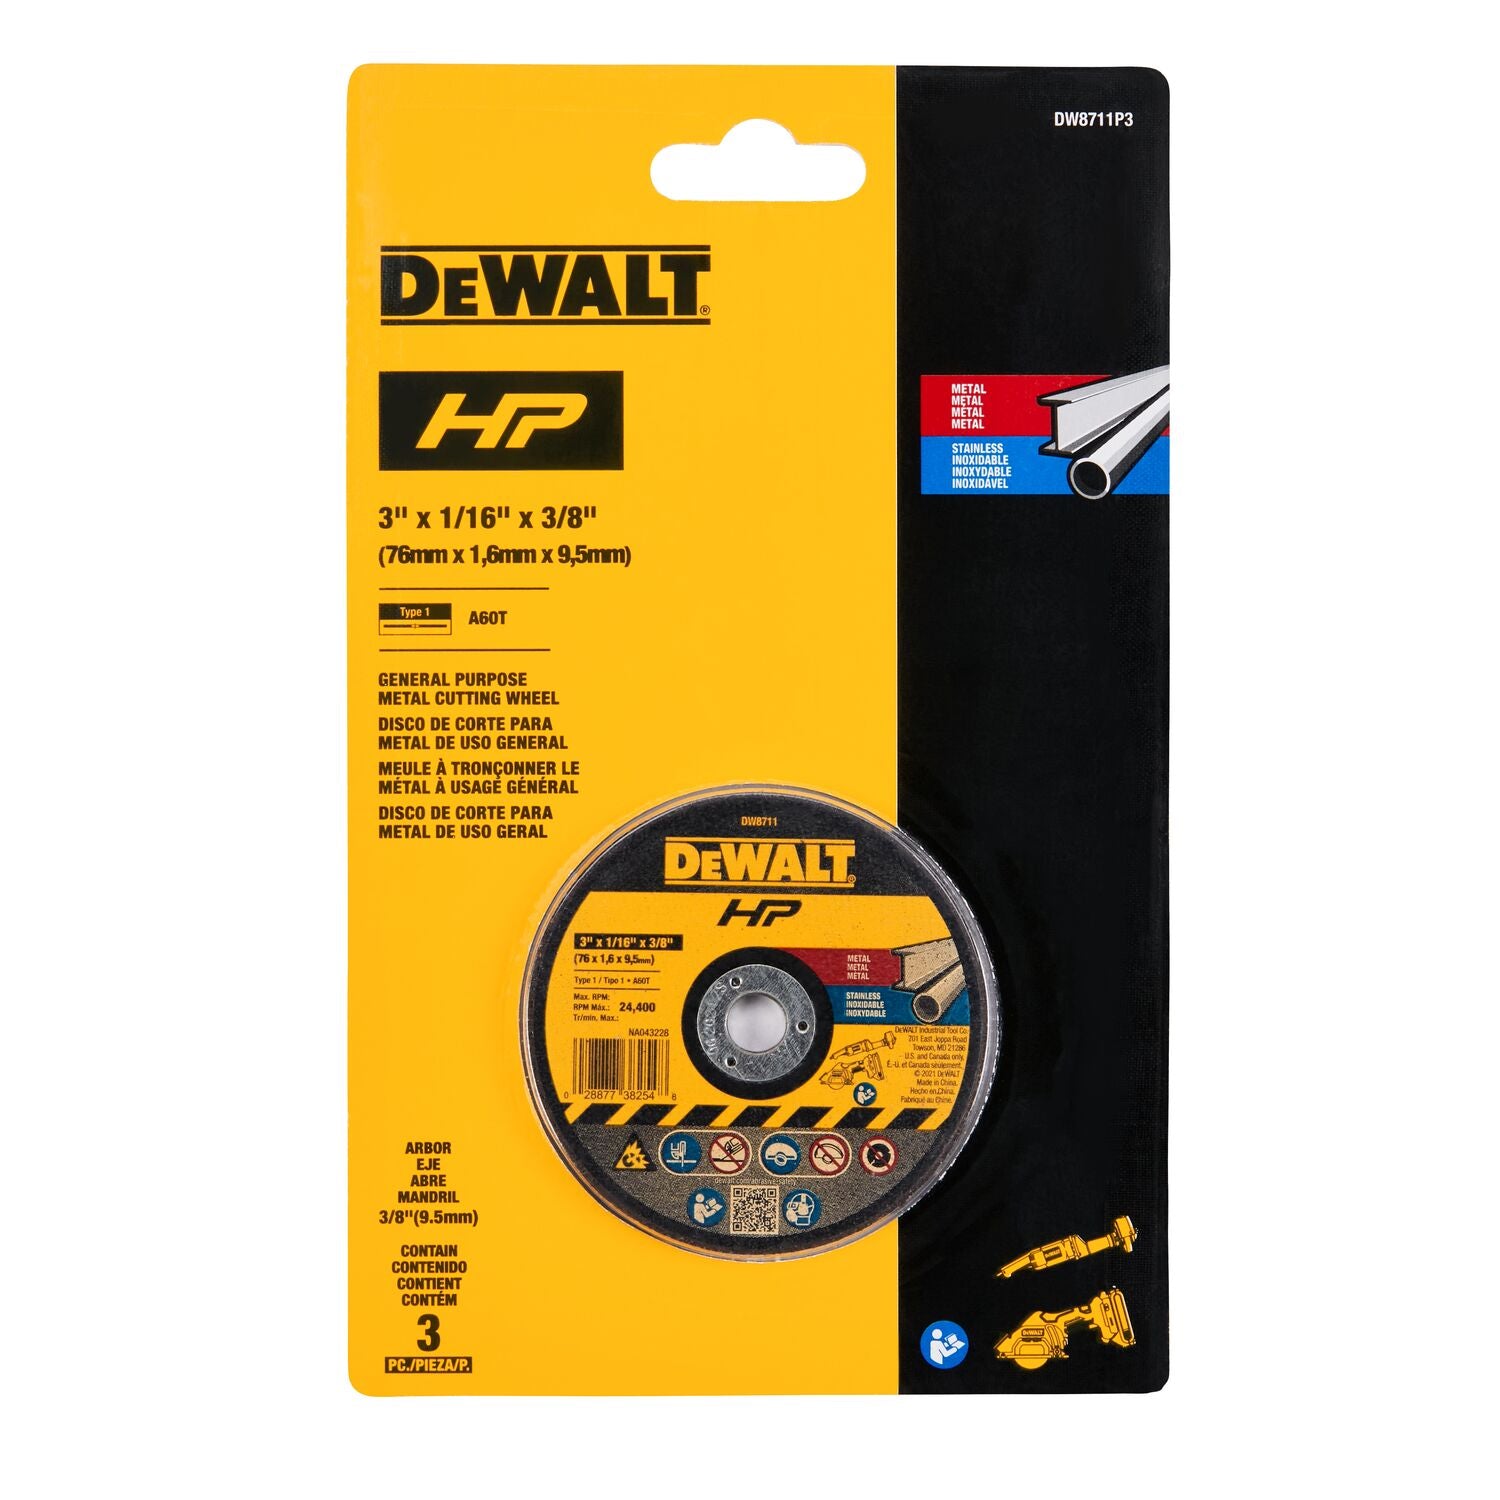 Dewalt DW8711P3 3 in Bonded Cutting Wheel (3 PK)